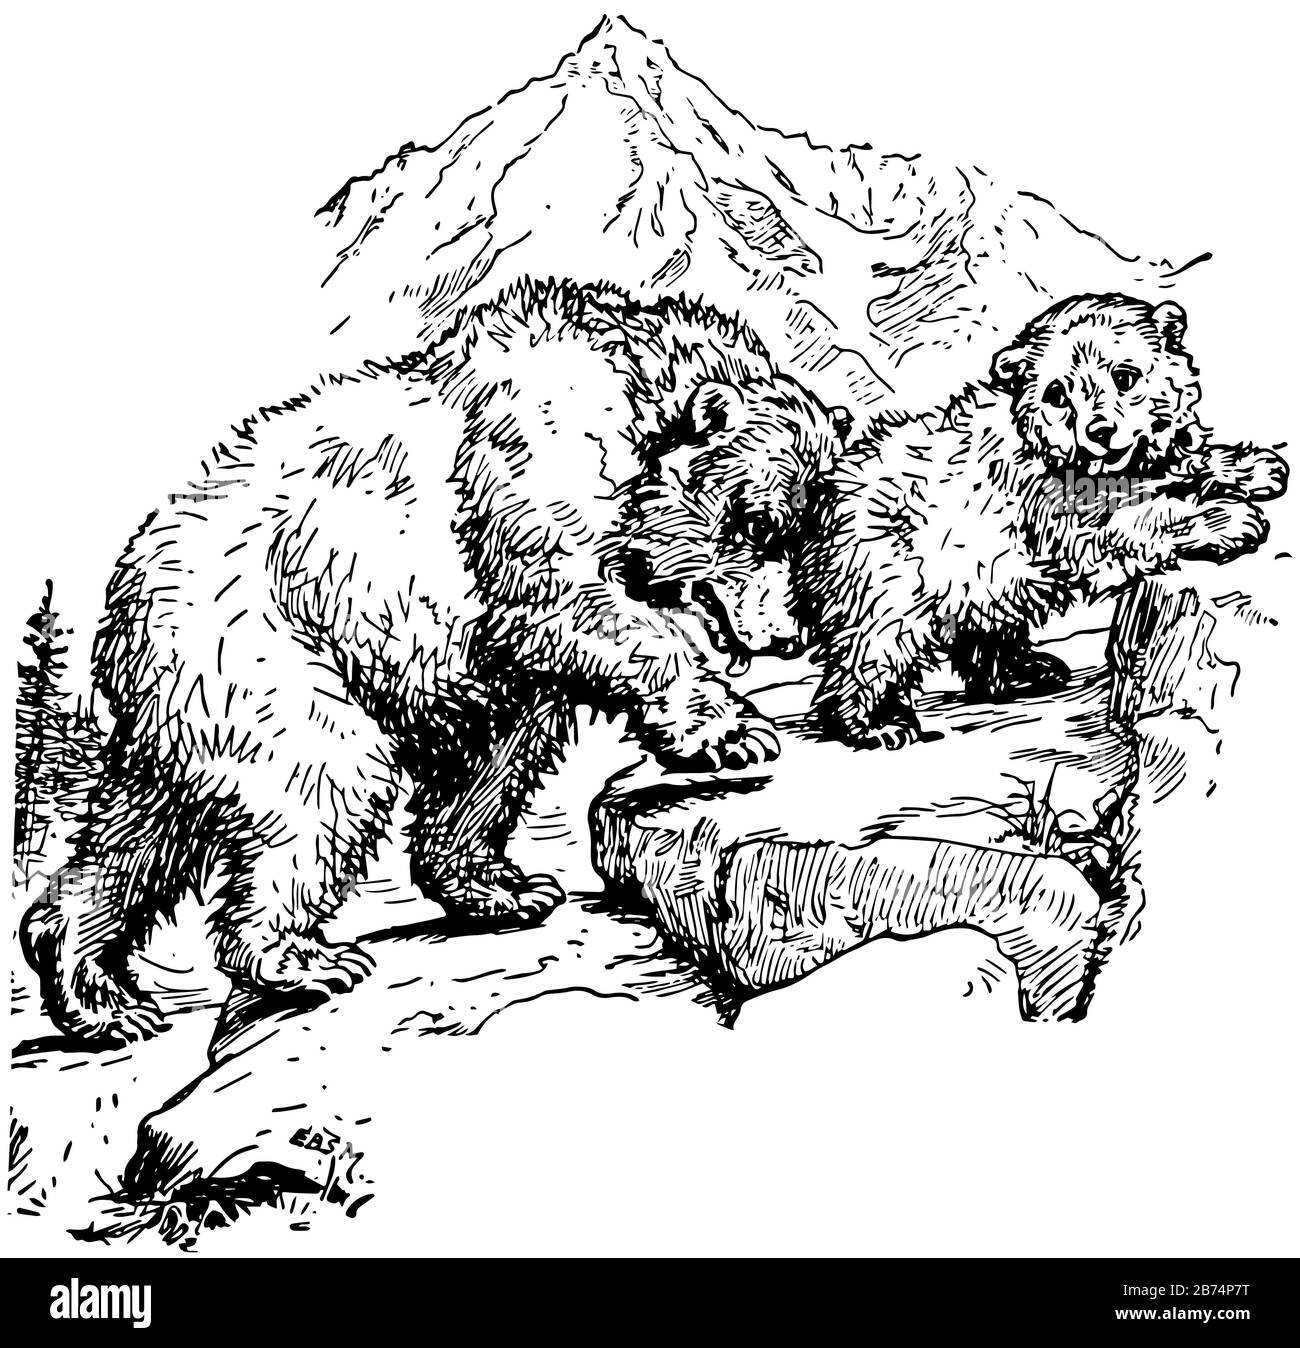 Zwei Bären klettern auf den Hügel, Vintage-Linien-Zeichnung oder Gravier-Illustration Stock Vektor